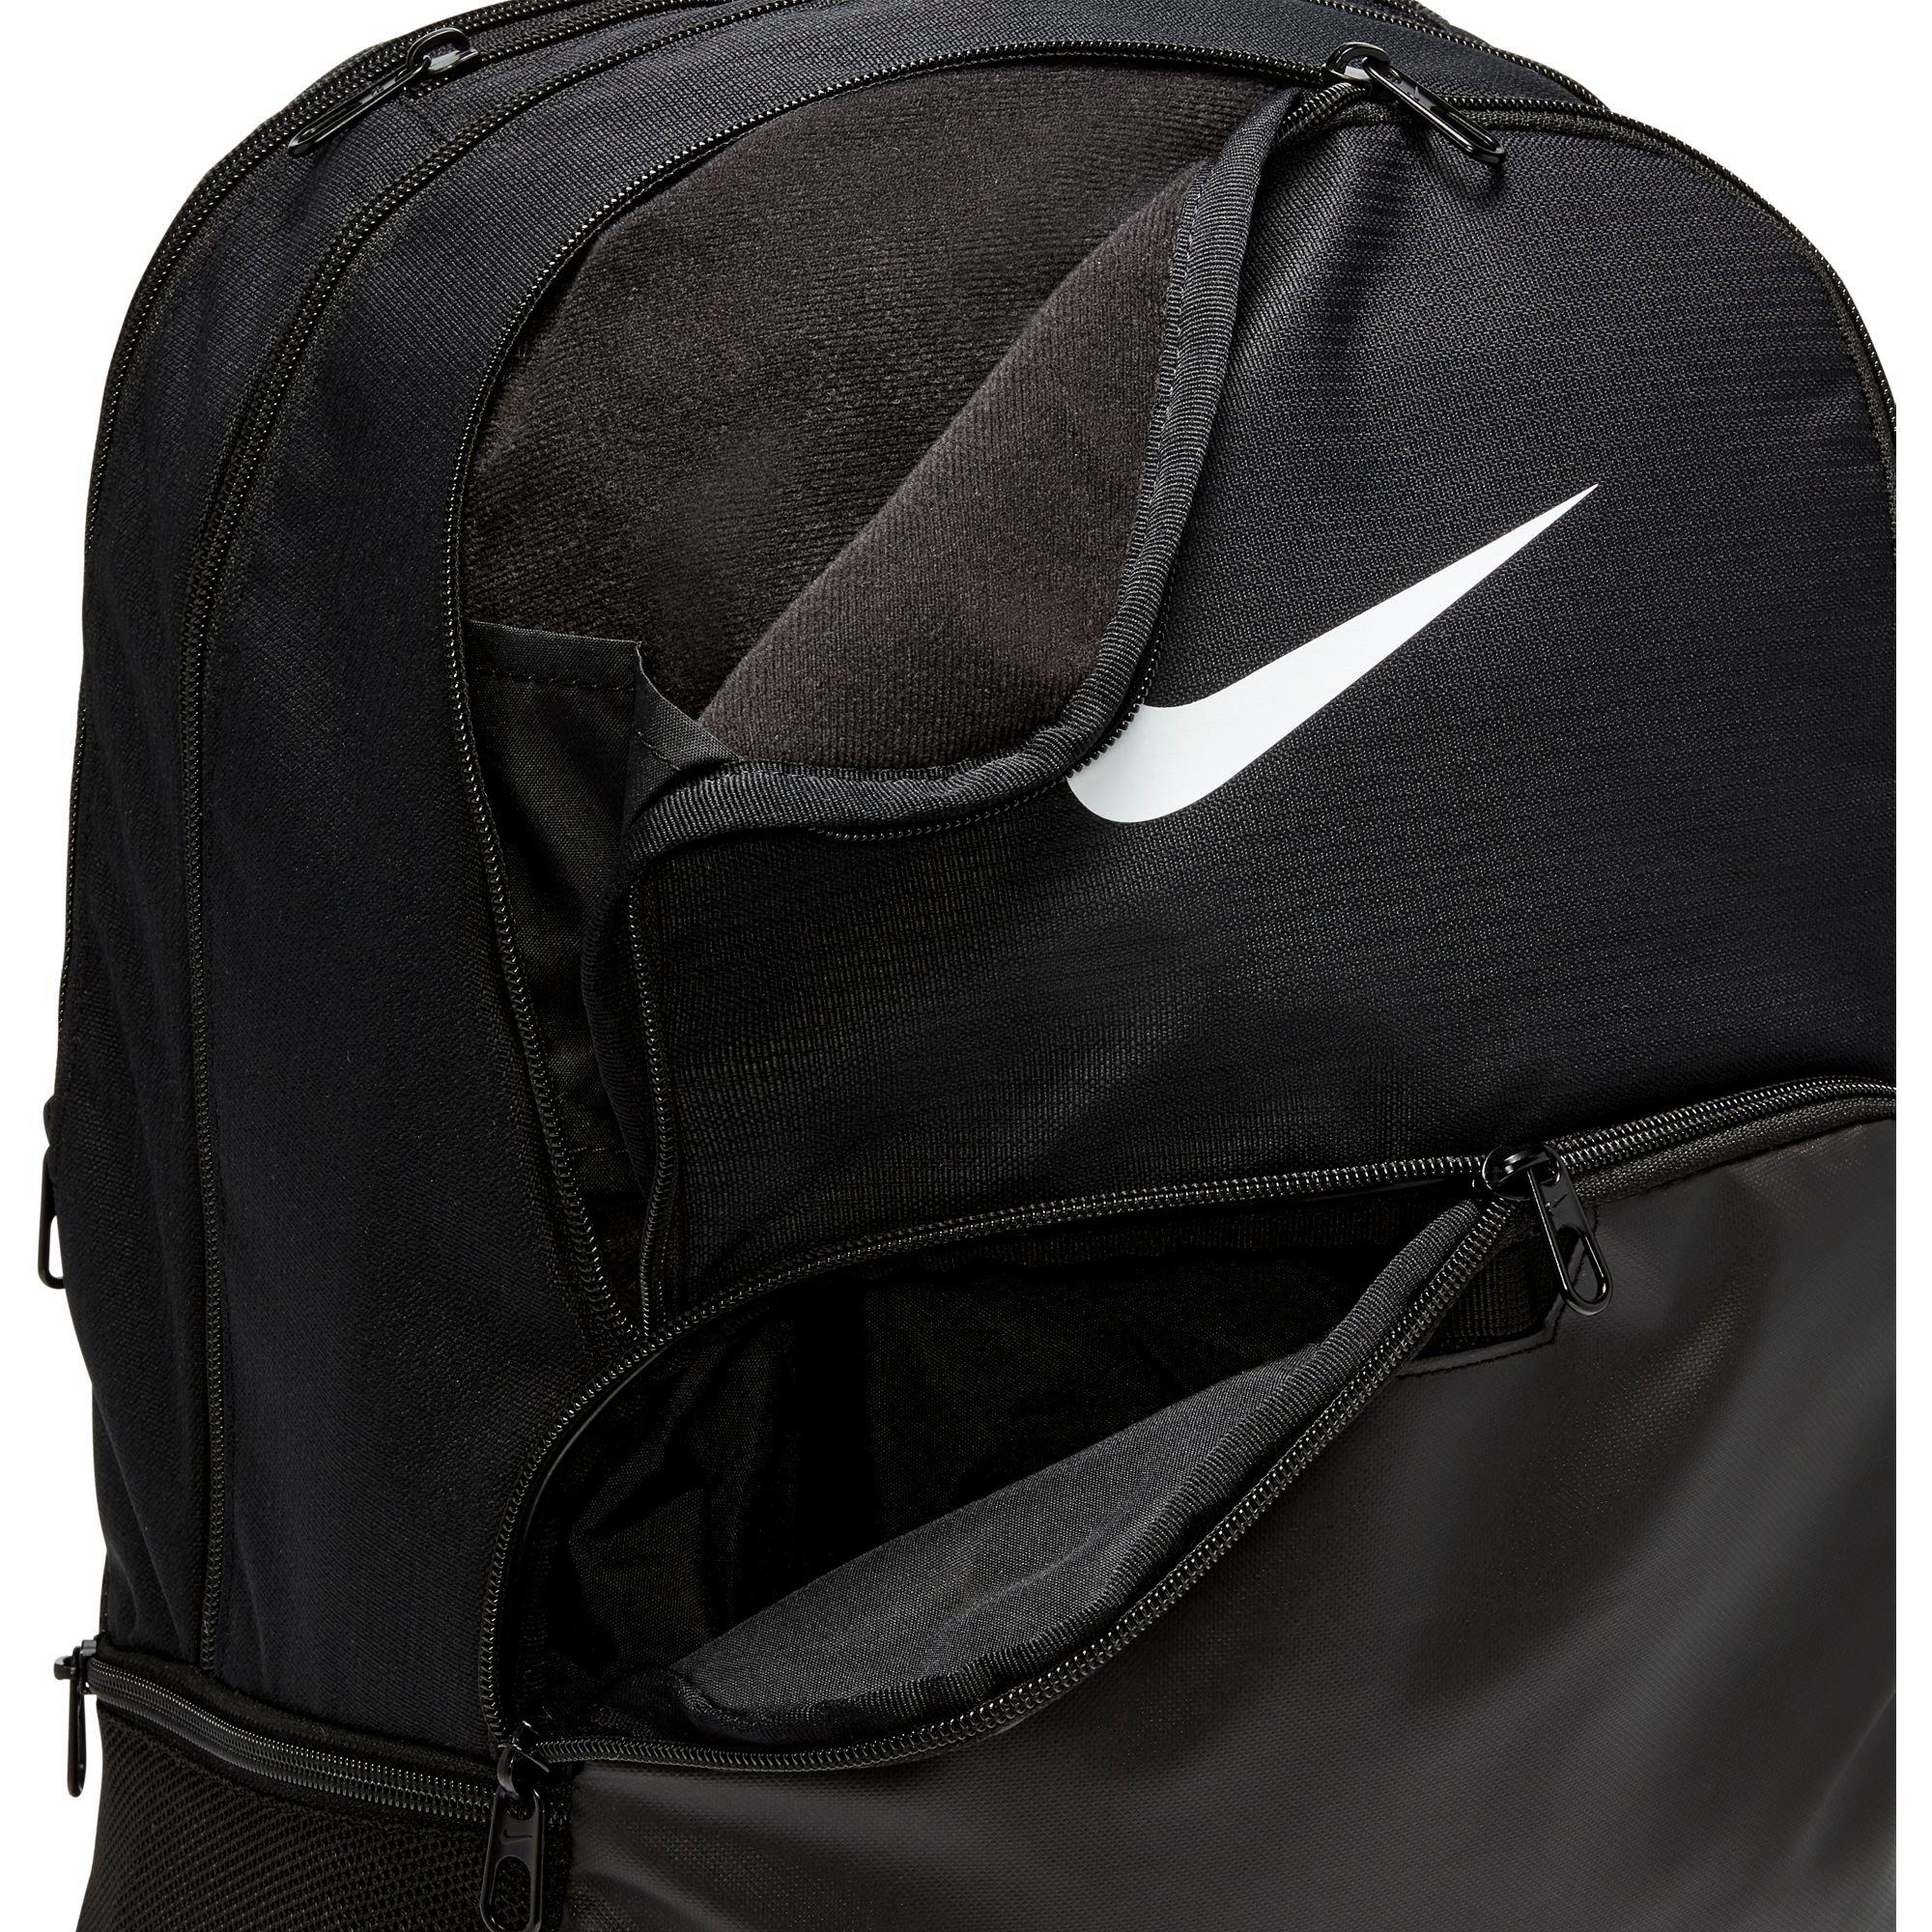 Nike Brasilia X-Large Backpack-9.0, Medium Olive/Black/Particle